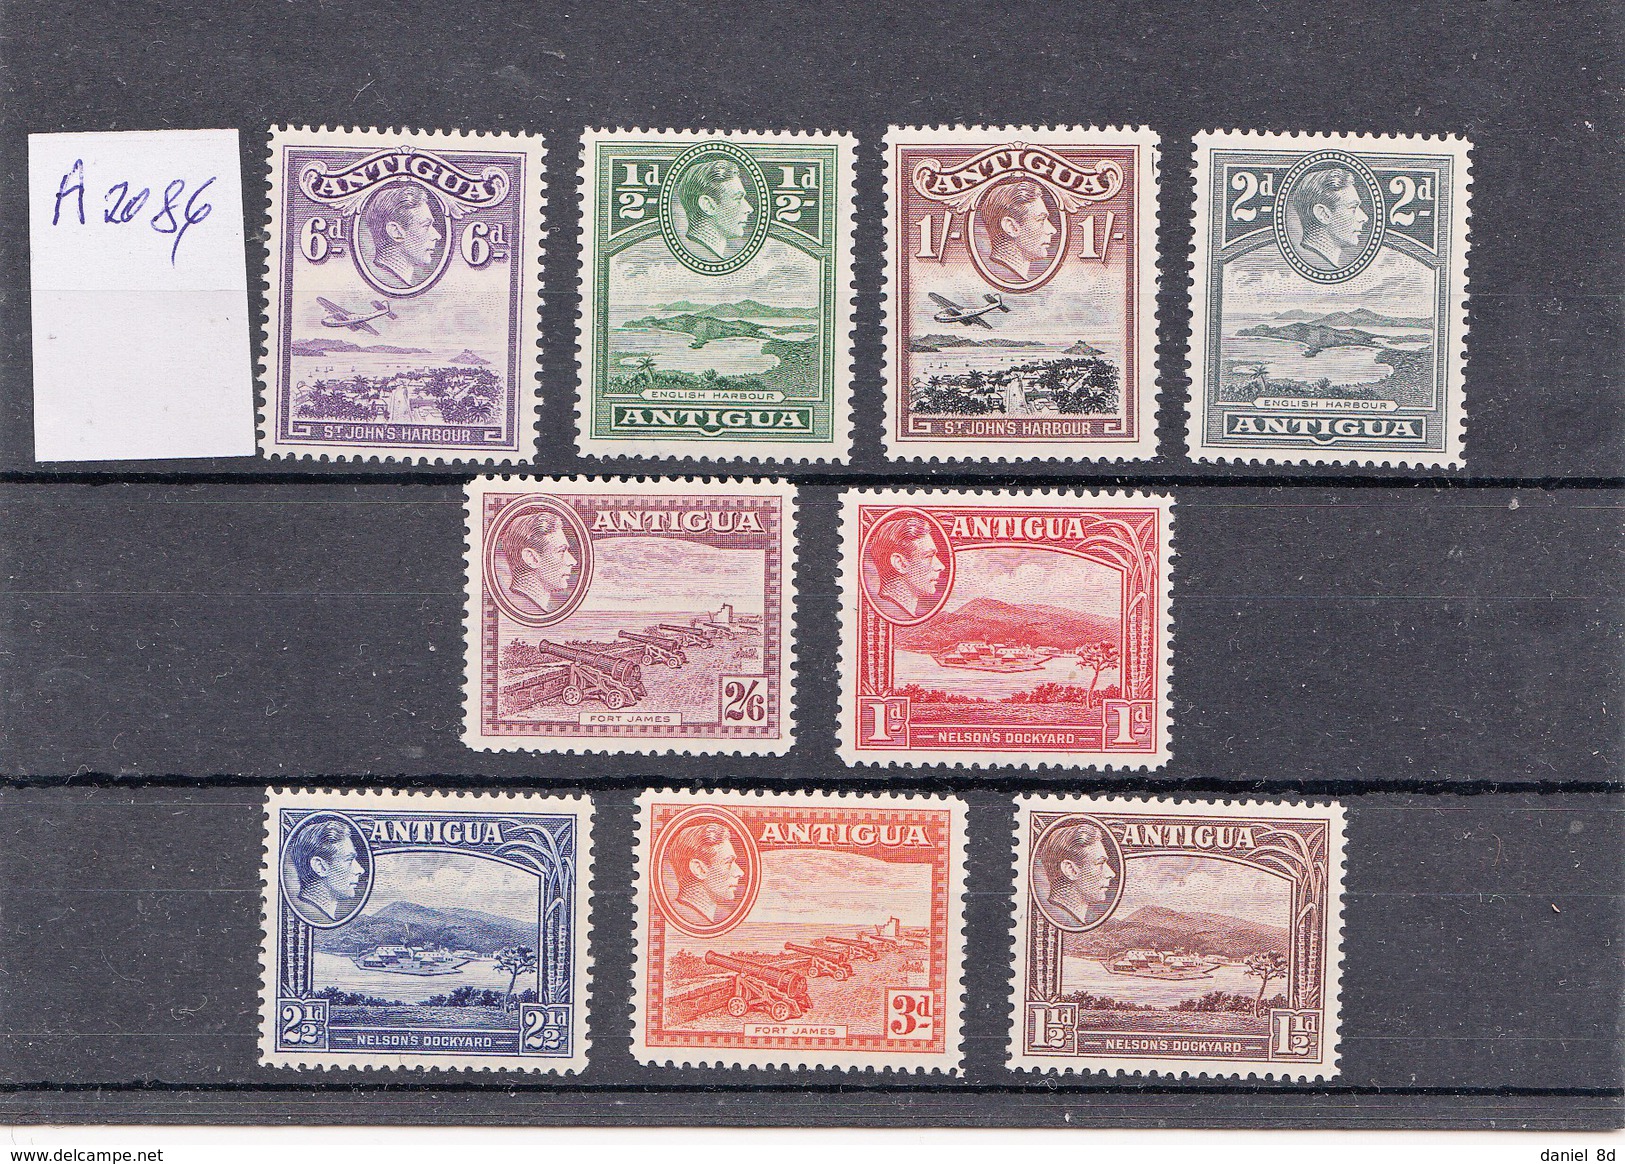 Antigua 1938, Mint.  VF, A2086 - 1858-1960 Kronenkolonie